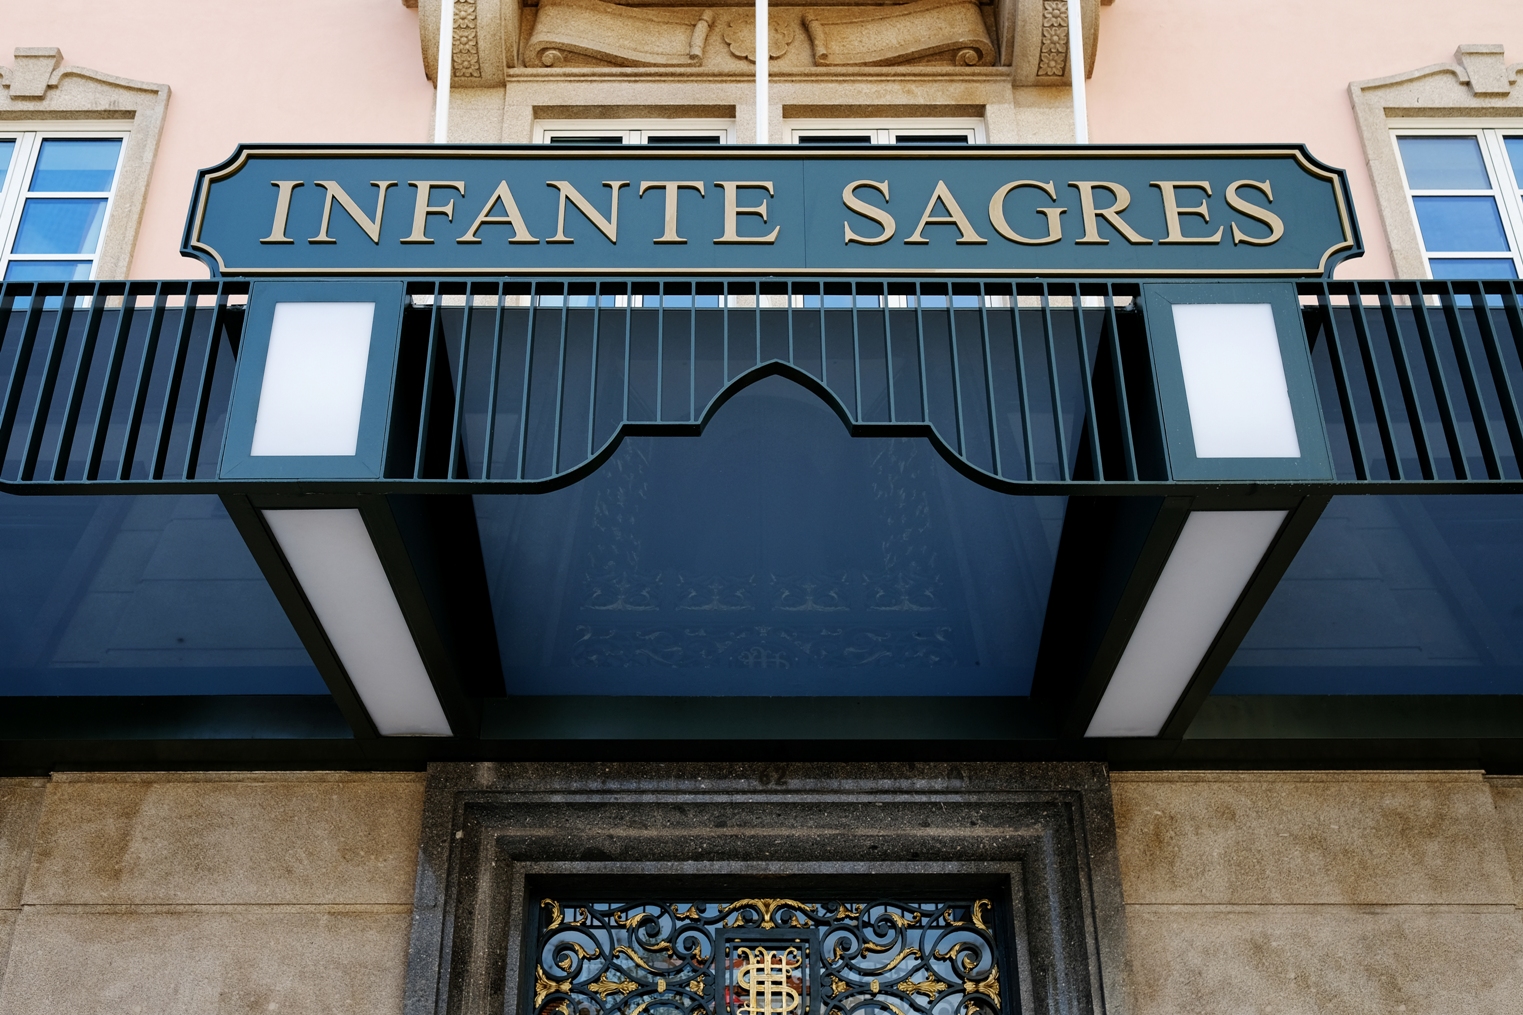 Hotel Infante Sagres - Hotels